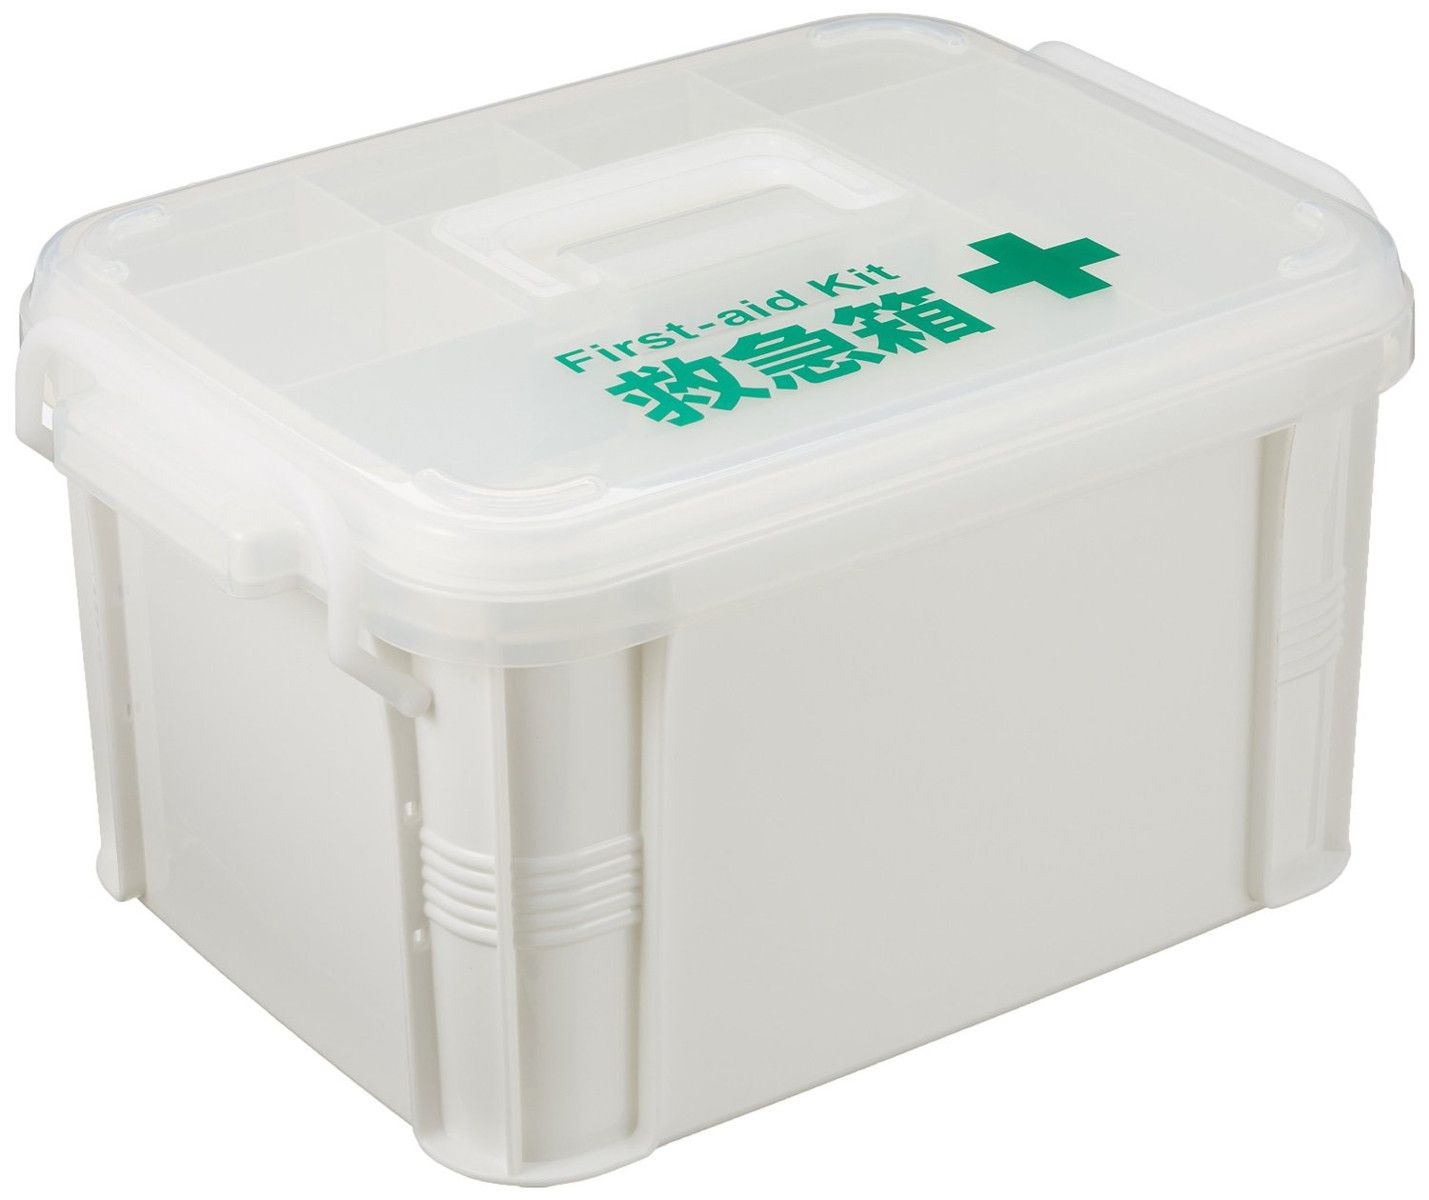 常備薬、まとめておけば安心常備薬・救急セットをすっきり収納できる救急箱。各家庭の常備薬、包帯や絆創膏、消毒液やピンセット、体温計など、いざという時のためにまとめておきましょう。仕様サイズ（約）:幅24×奥行33.7×高さ19.2cm材質:ポリプロピレン日本製送料：北海道・沖縄・離島は追加の送料がかかりますのでお問い合わせください。発送時期：メーカー在庫欠品の際は、発送時期に遅れが生じますので、予めご了承ください。お急ぎのお客様は、事前にお問い合わせください。